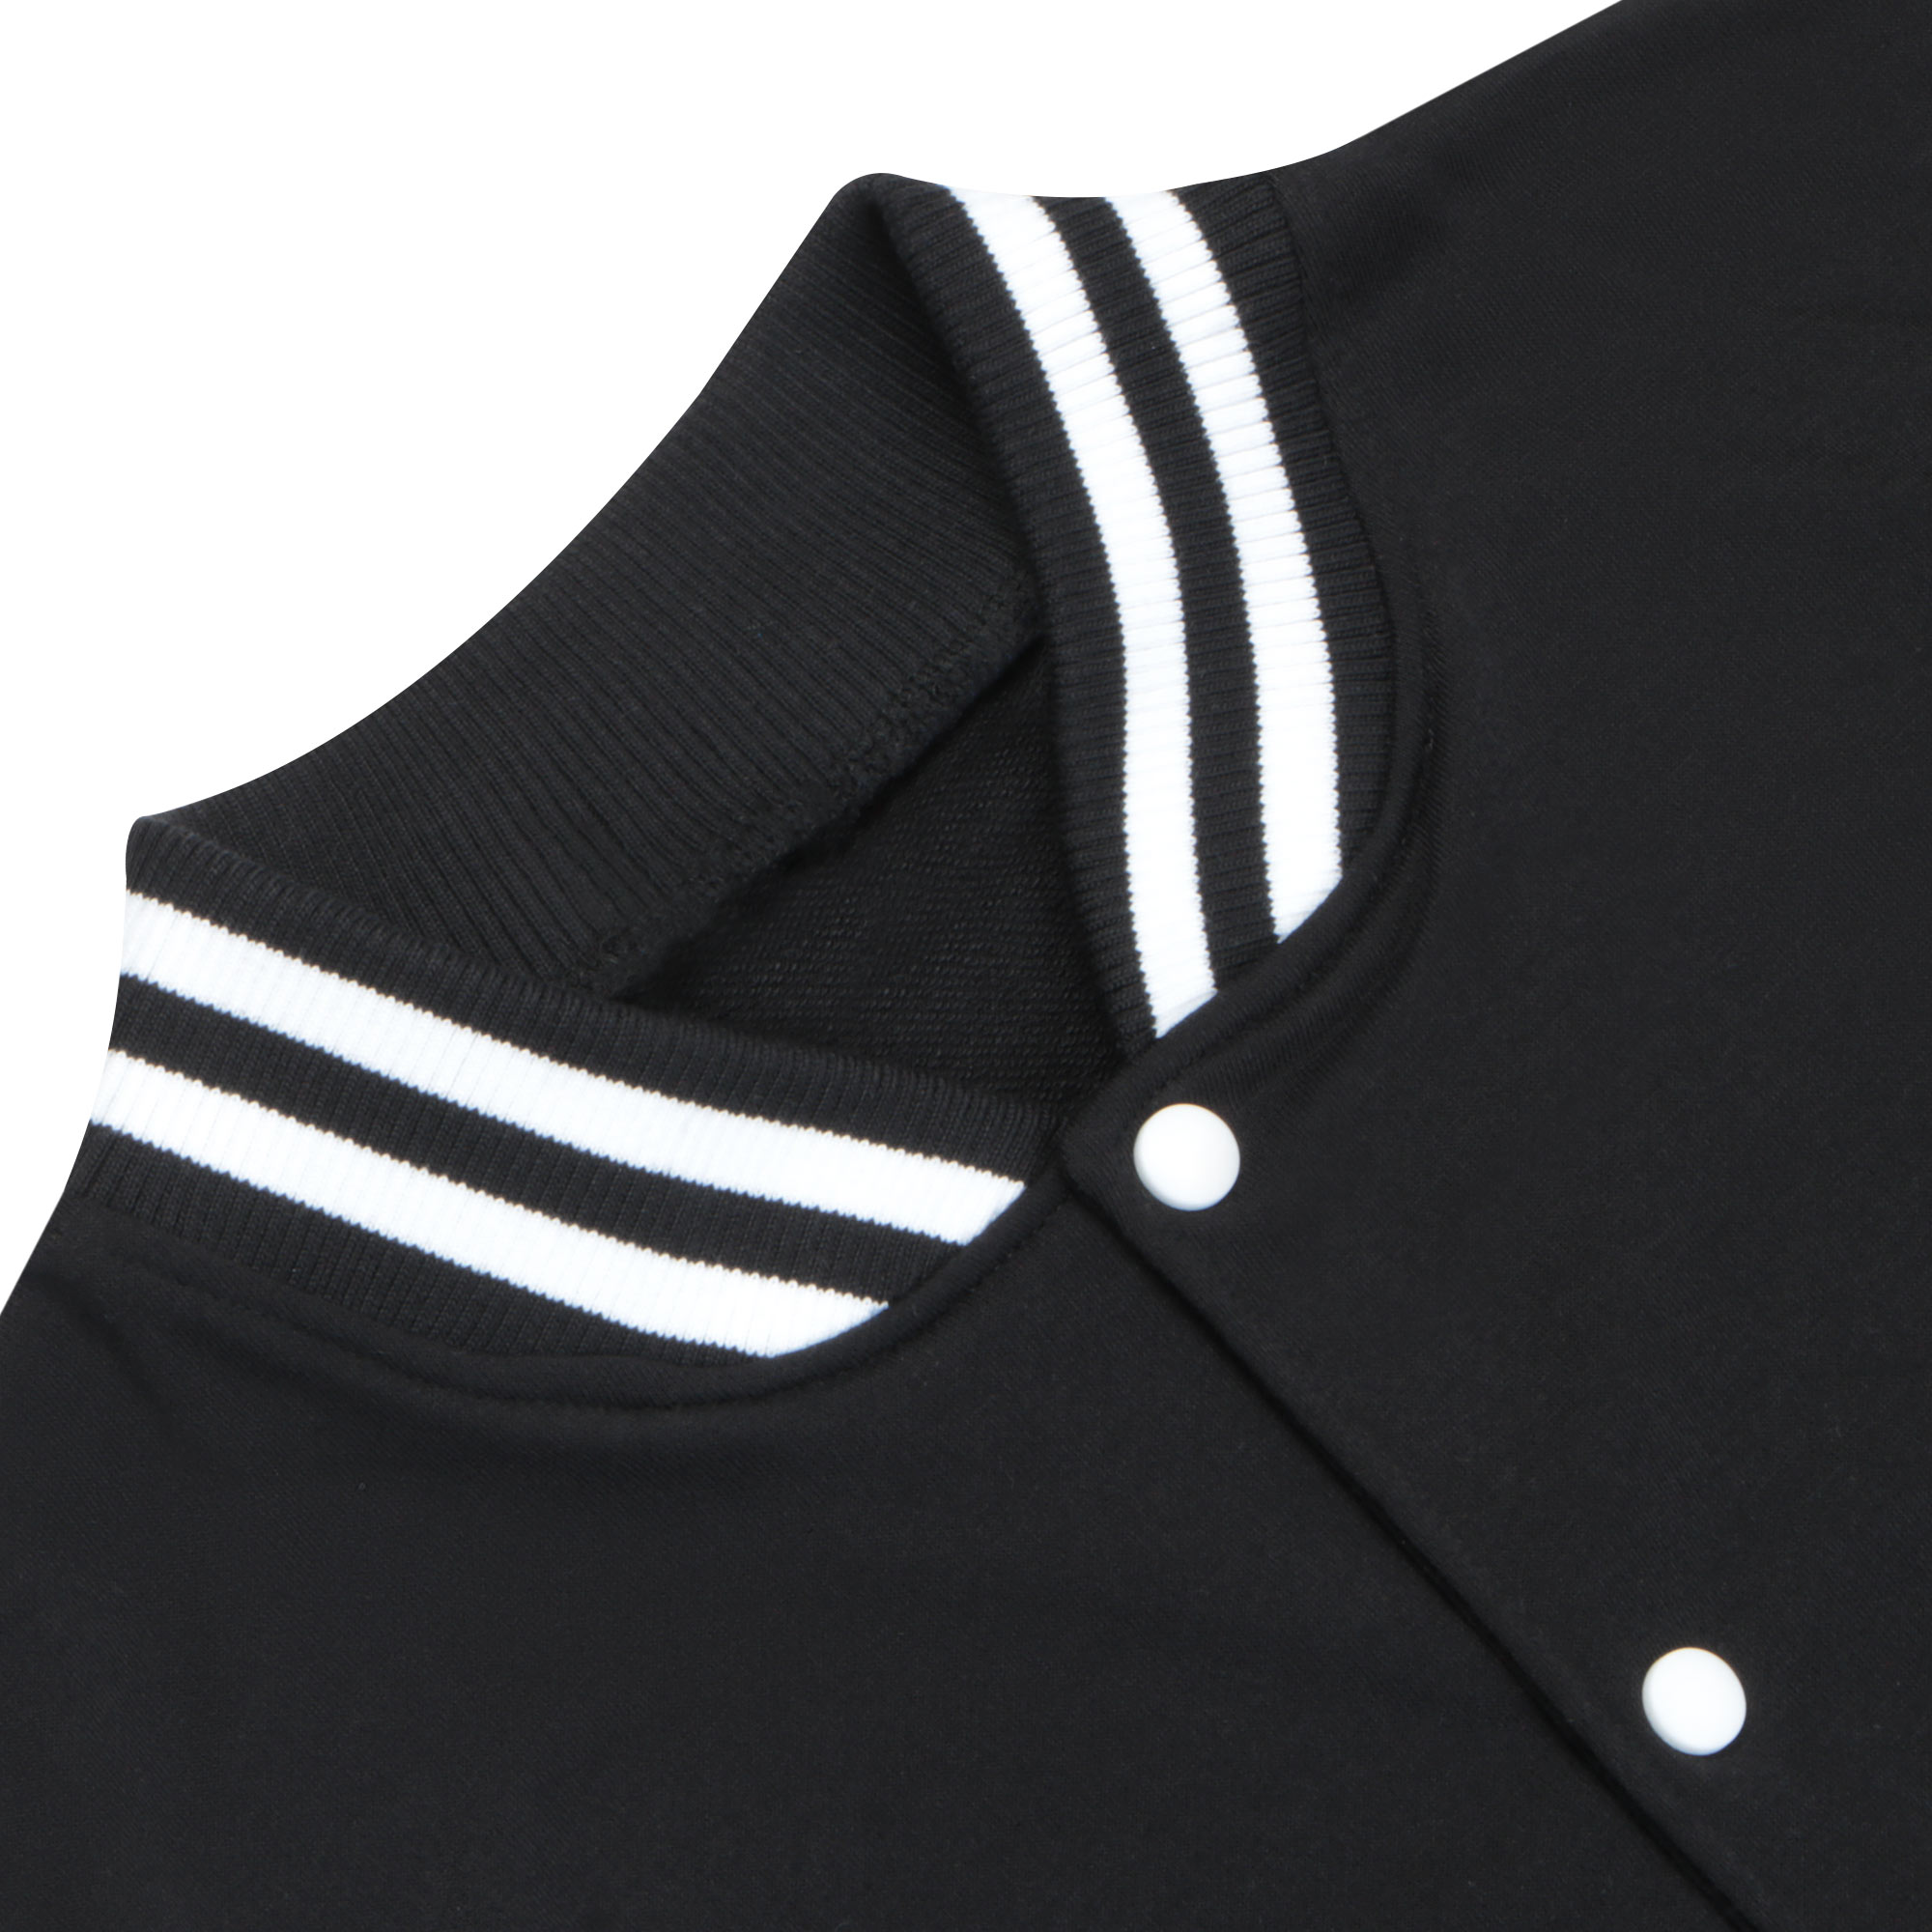 Бомбер Garment чёрный/белый XL полиэстер, цвет черный, размер XL - фото 4